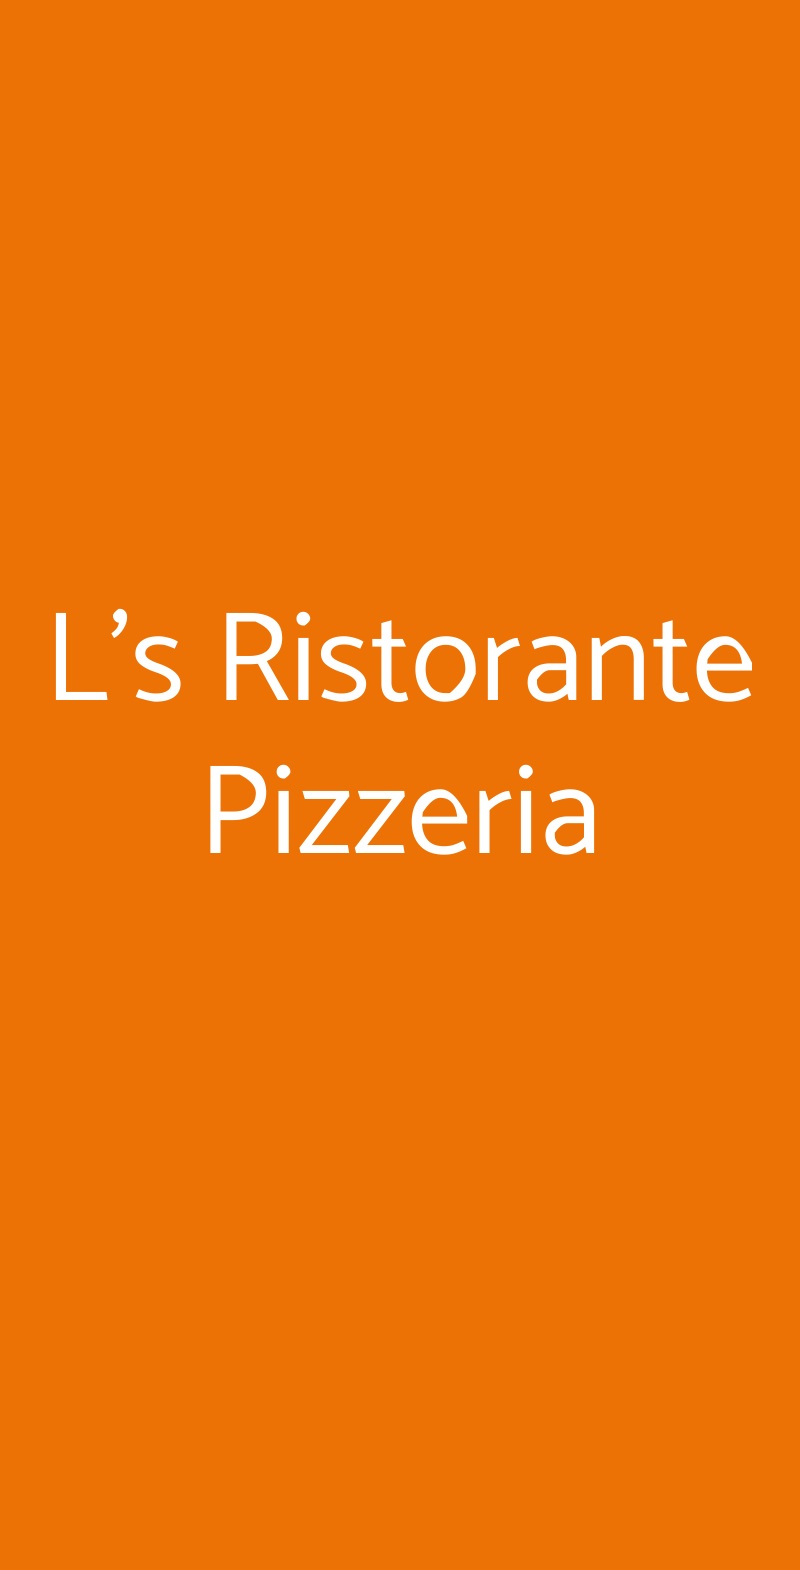 L's Ristorante Pizzeria Serrano menù 1 pagina